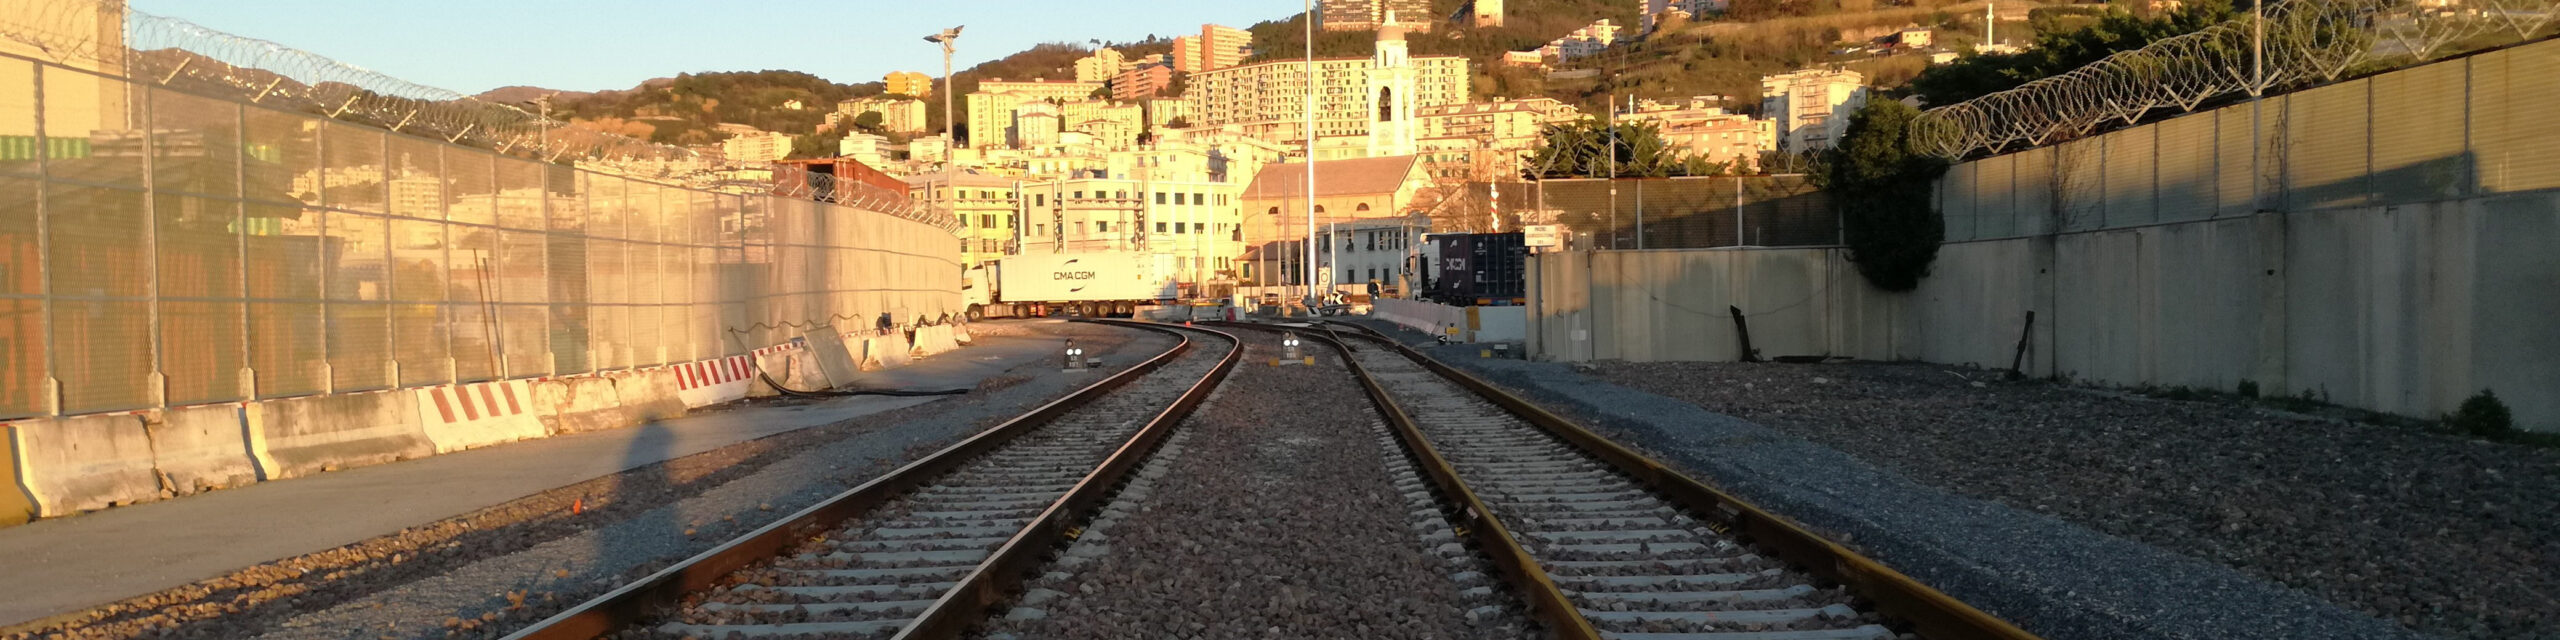 Ferrovie: attivato secondo binario di accesso al terminal di Genova Prà Mare